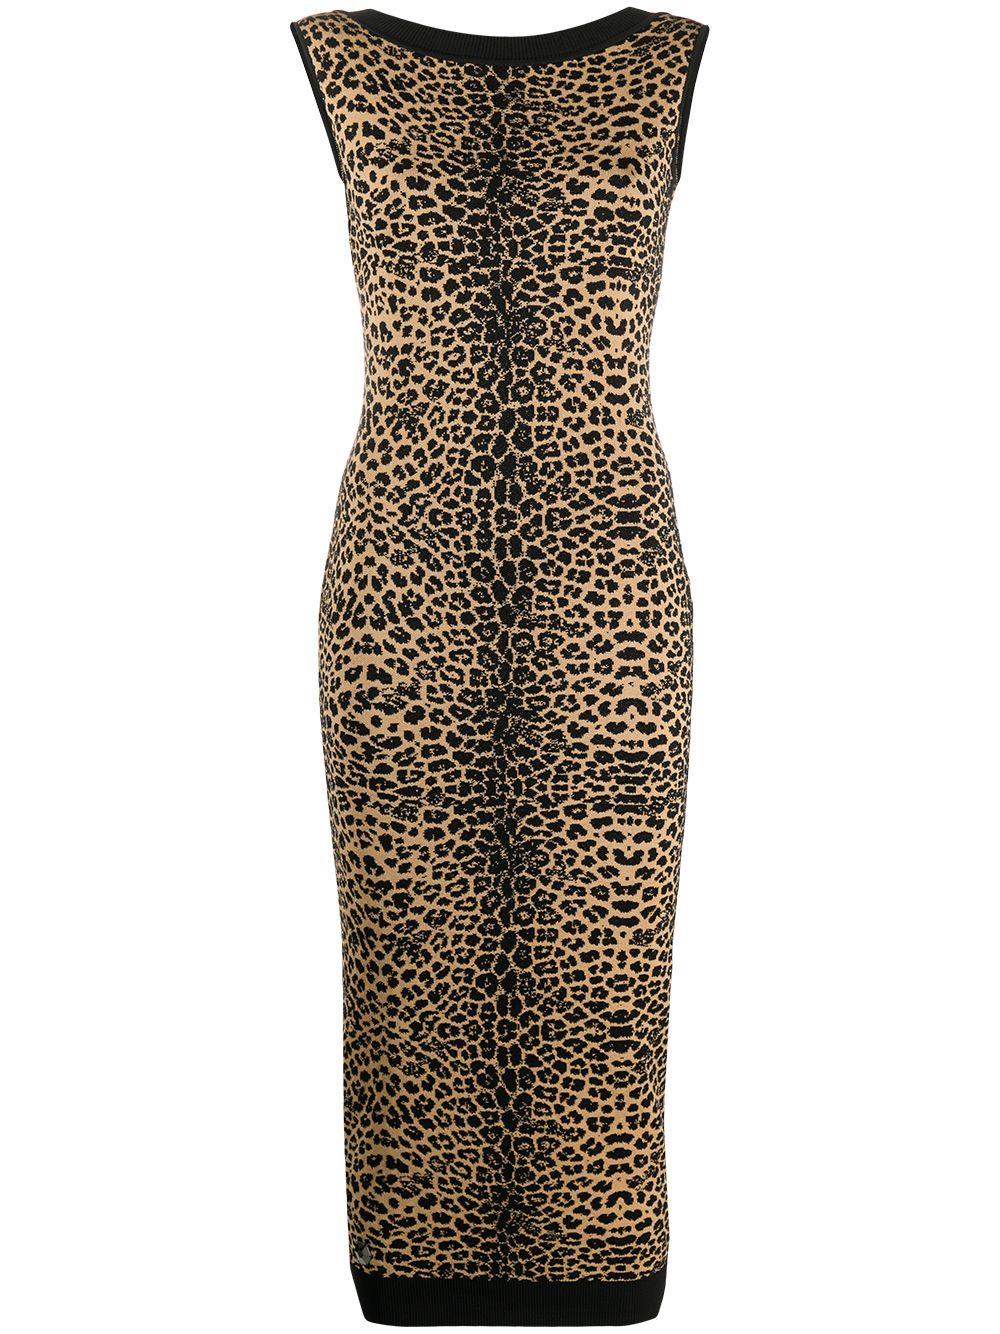 фото Philipp plein платье maribelle с леопардовым узором вязки интарсия